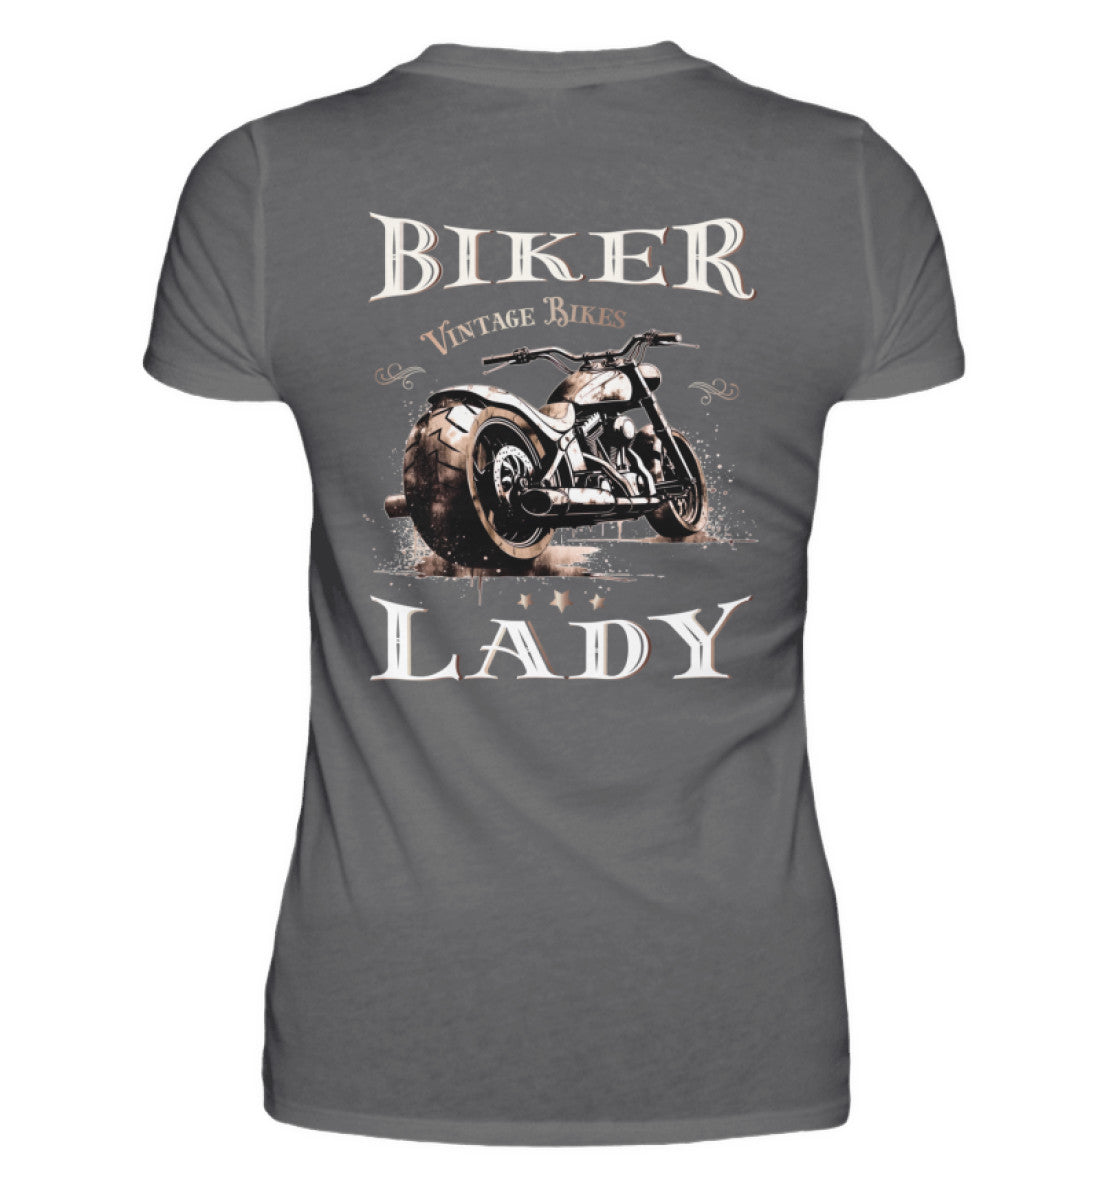 Ein Bikerin T-Shirt mit einem Aufdruck im vintage Stil, Biker Lady, mit Back Print in dunkelgrau.